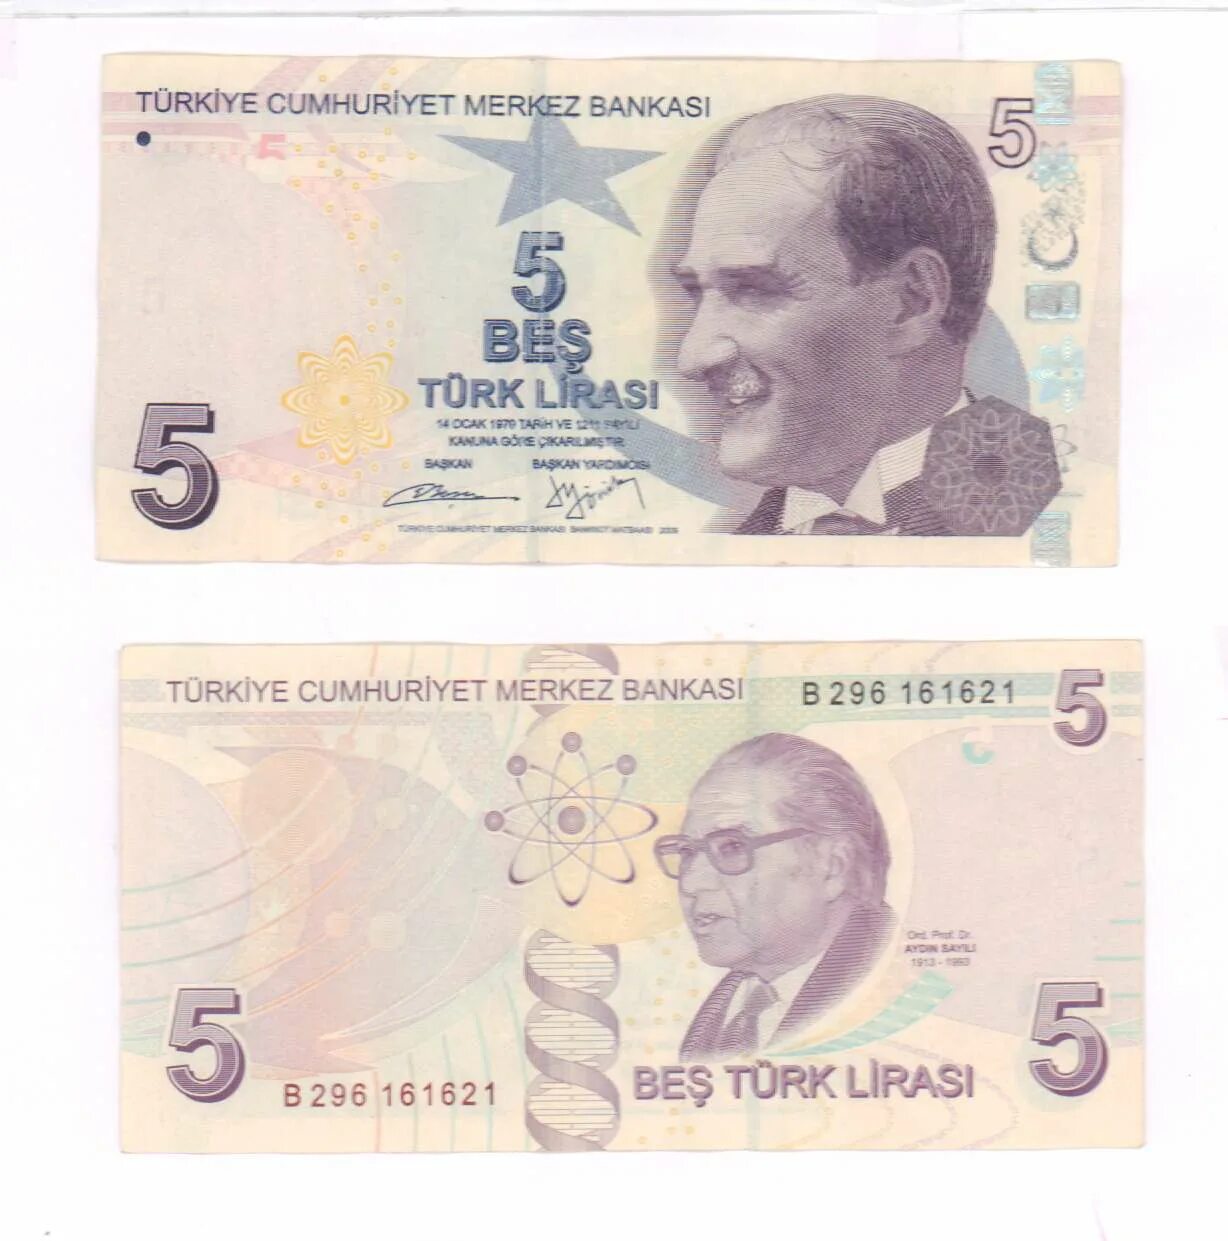 5 Лир Турция купюра. Банкнота 5 турецких лир. 5 Турецких лир купюра. Турецкие банкноты 5 лир.